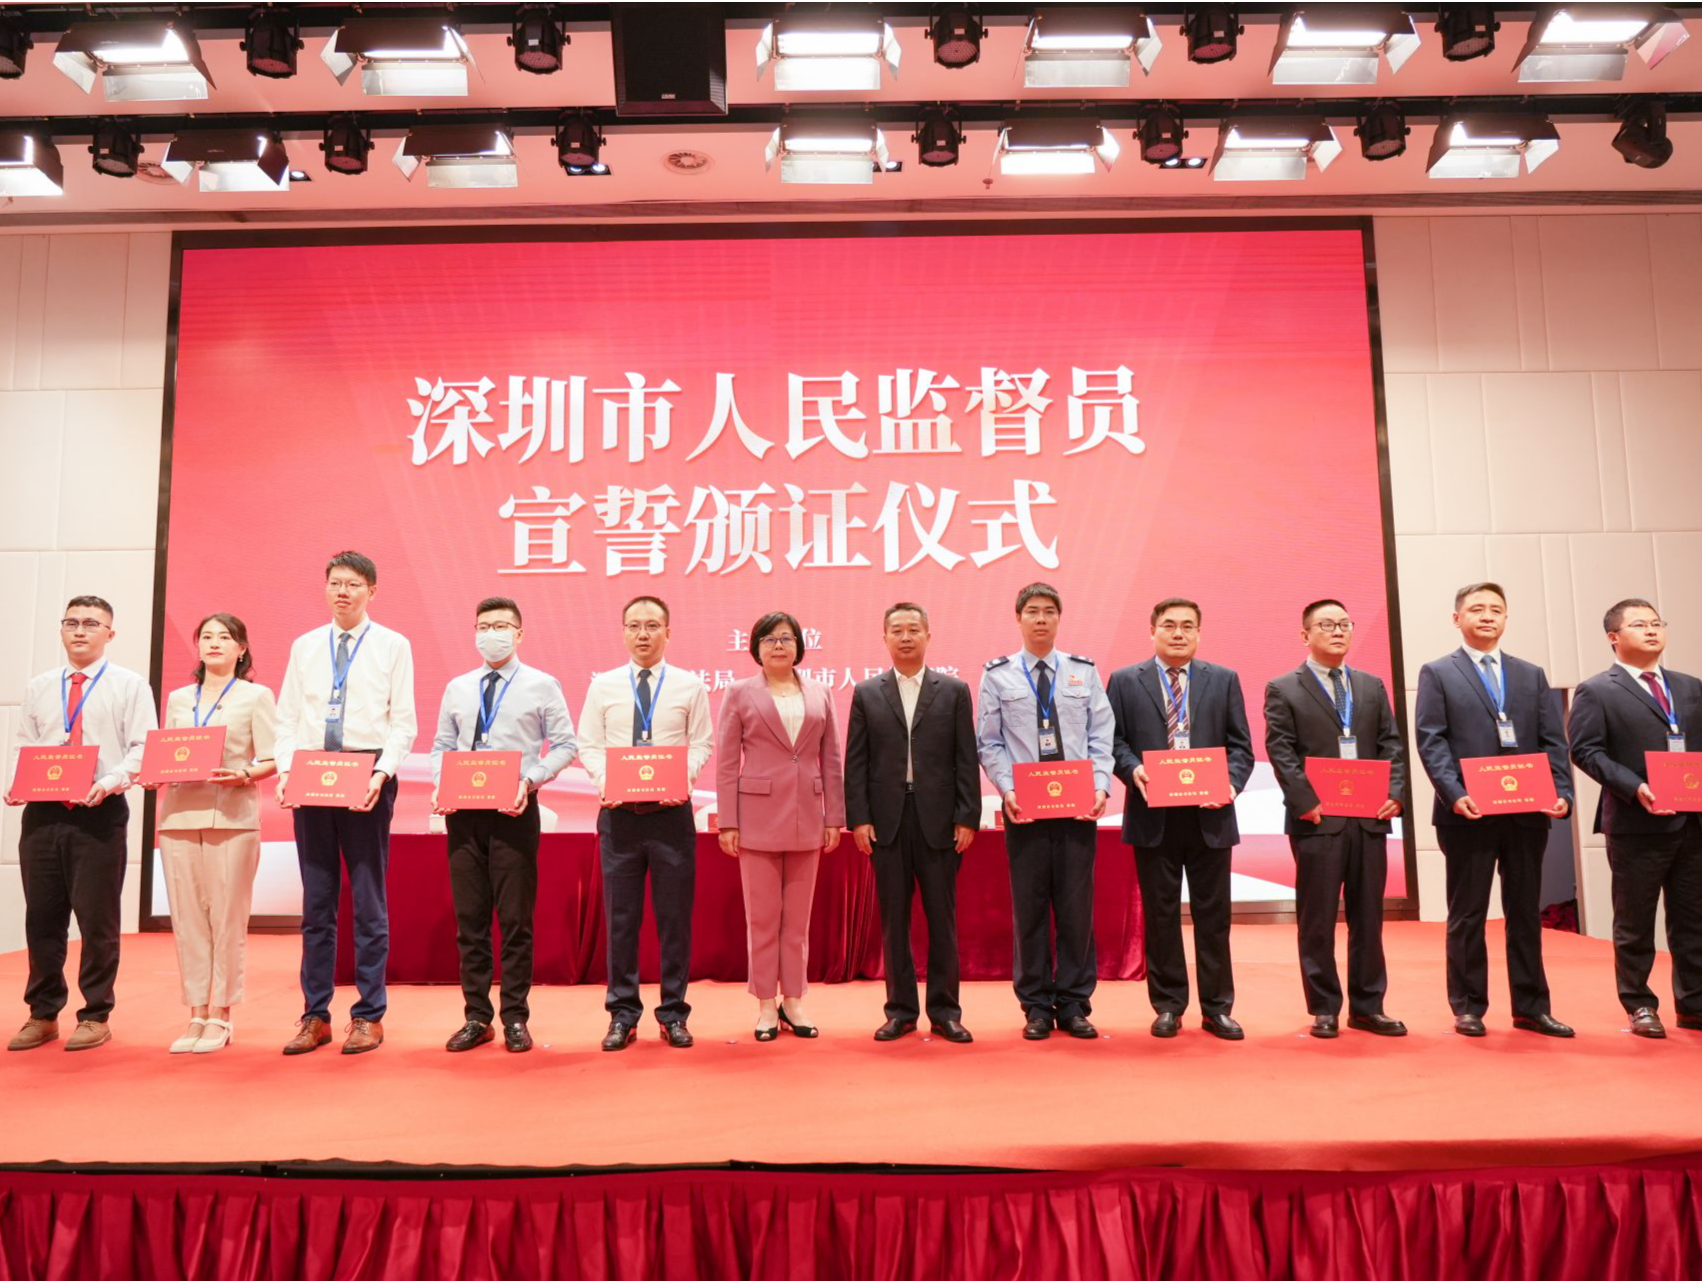 127名深圳市人民监督员宣誓履职，包含首批5名港澳籍人民监督员